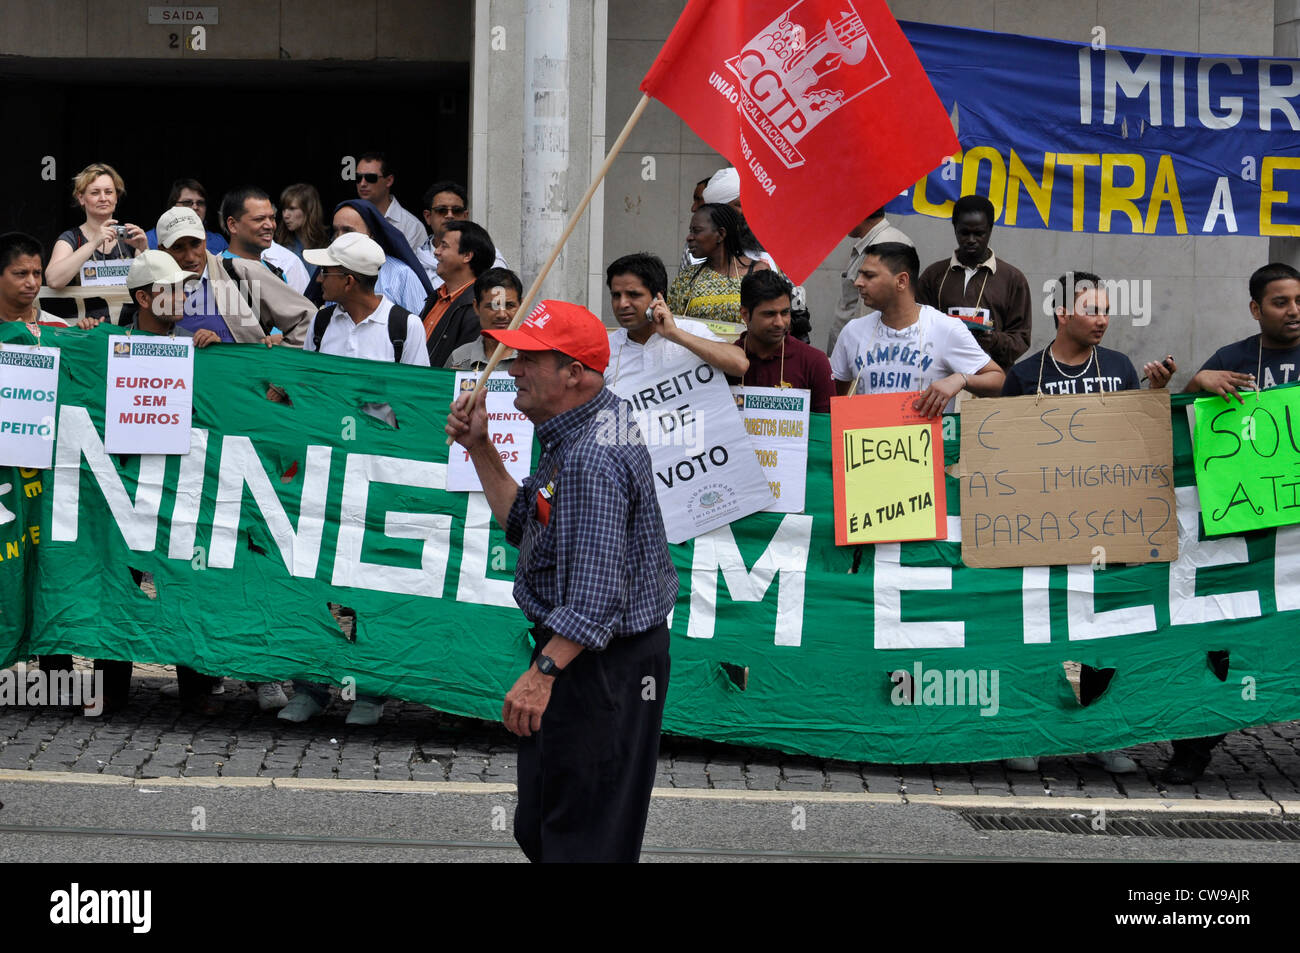 1 maggio - Giorno della festa dei lavoratori manifestazione di Lisbona, Portogallo. Gli immigrati contro la schiavitù. Foto Stock